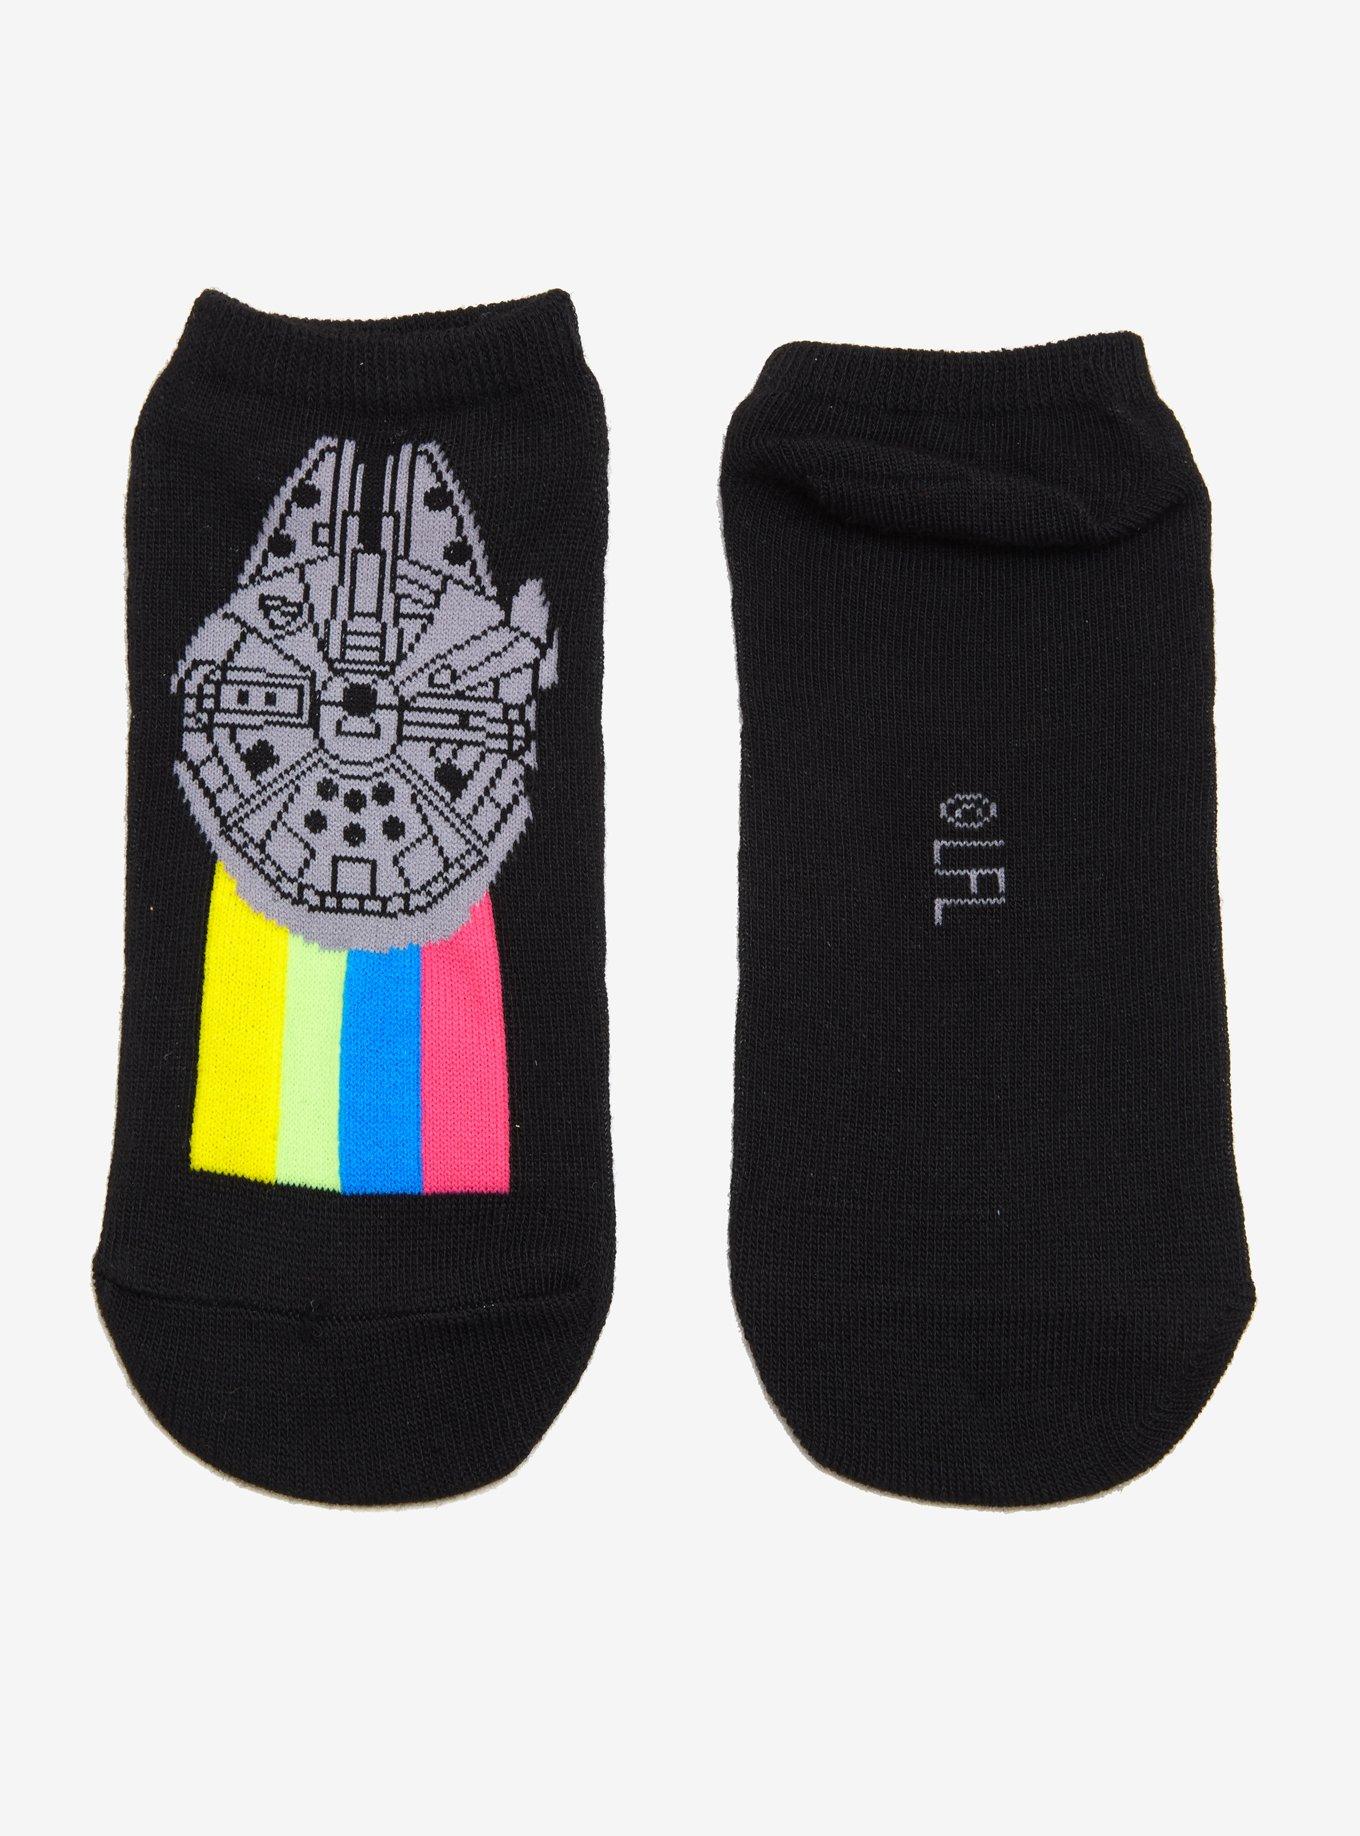 Star Wars Millennium Falcon No-Show Socks, , hi-res